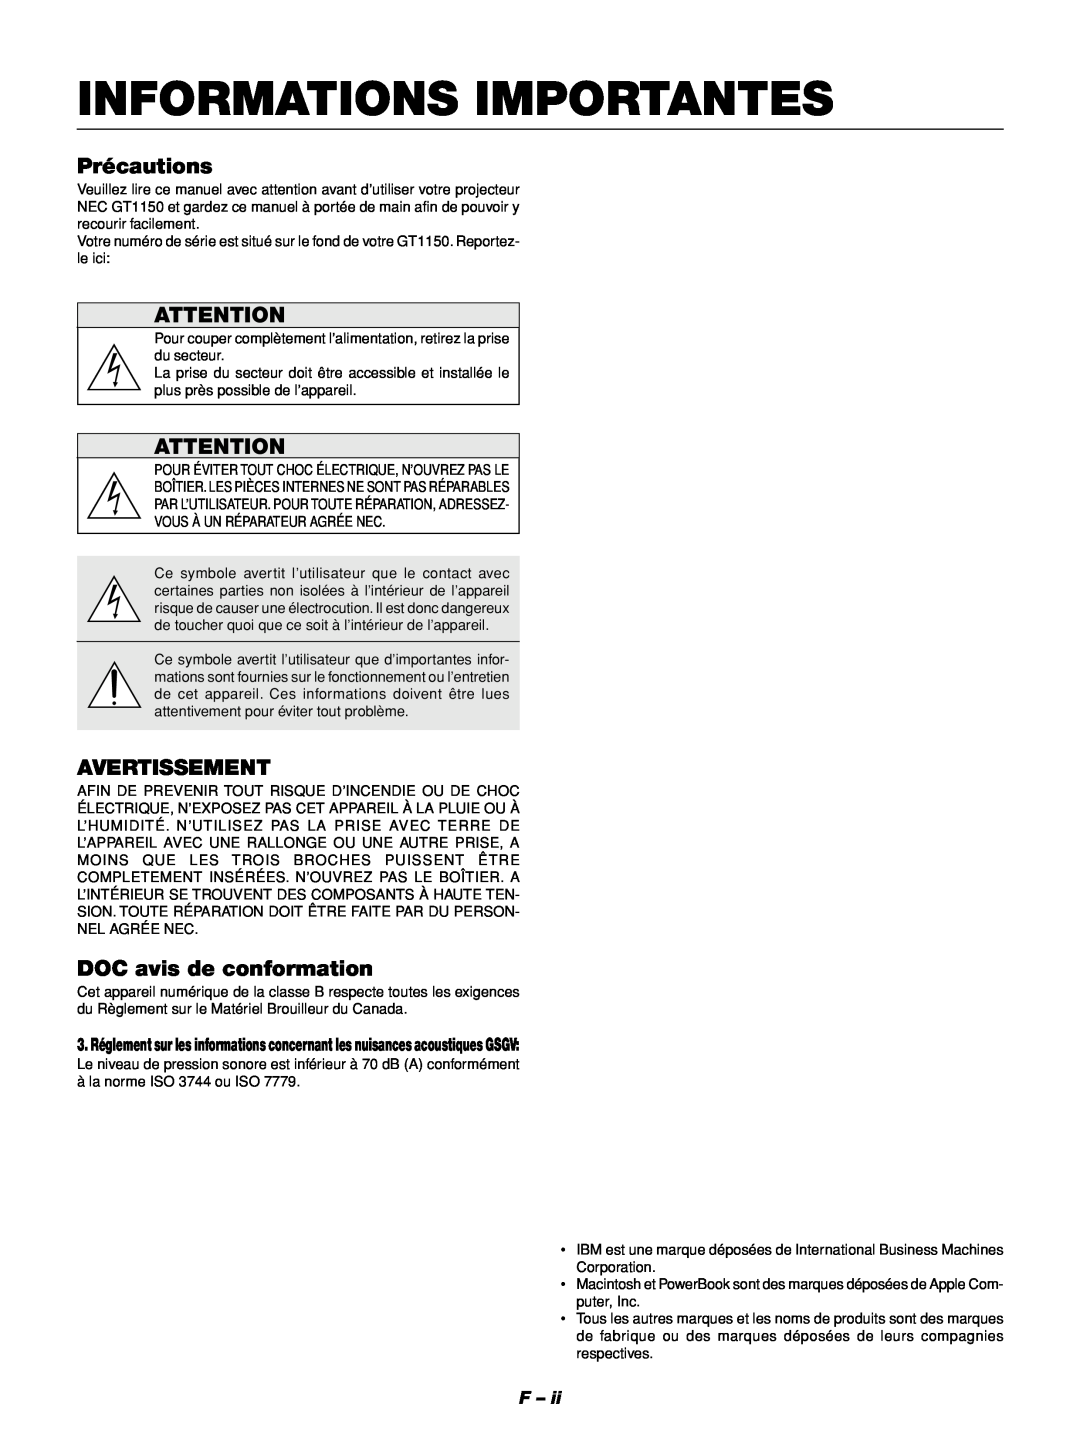 NEC GT1150 manuel dutilisation Informations Importantes, Précautions, Avertissement, DOC avis de conformation 